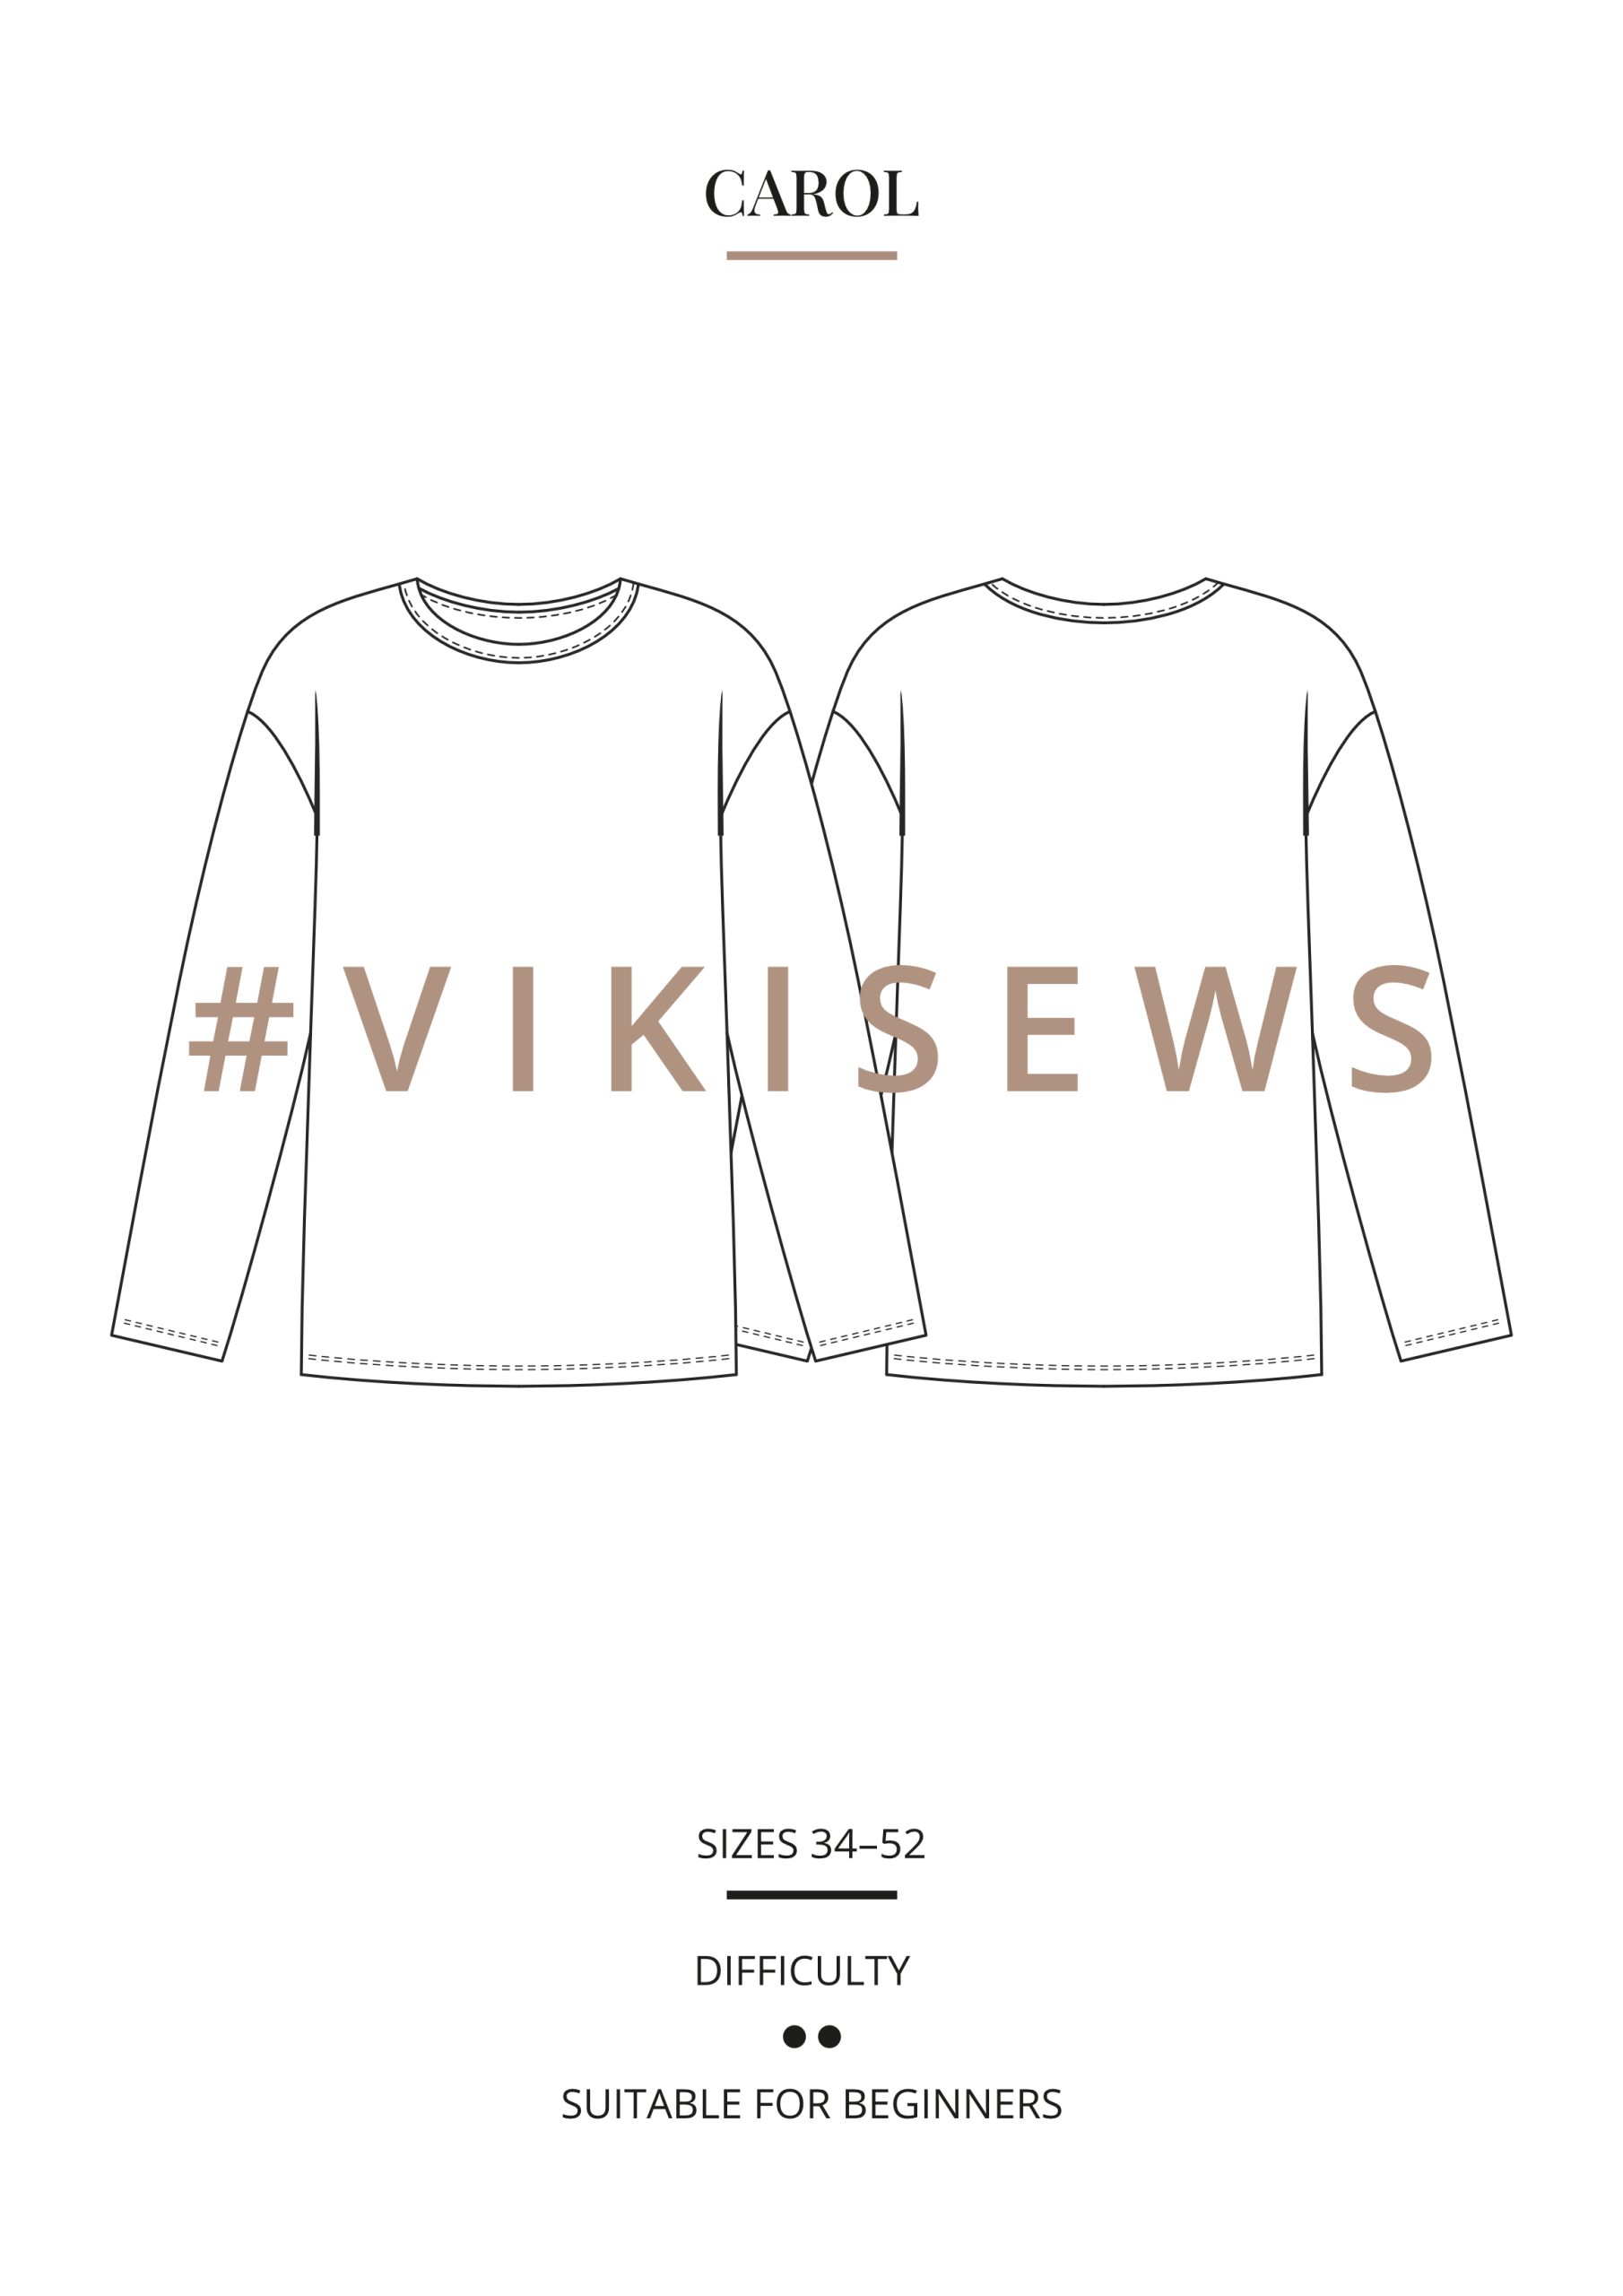 Vikisews Carol Sweater PDF